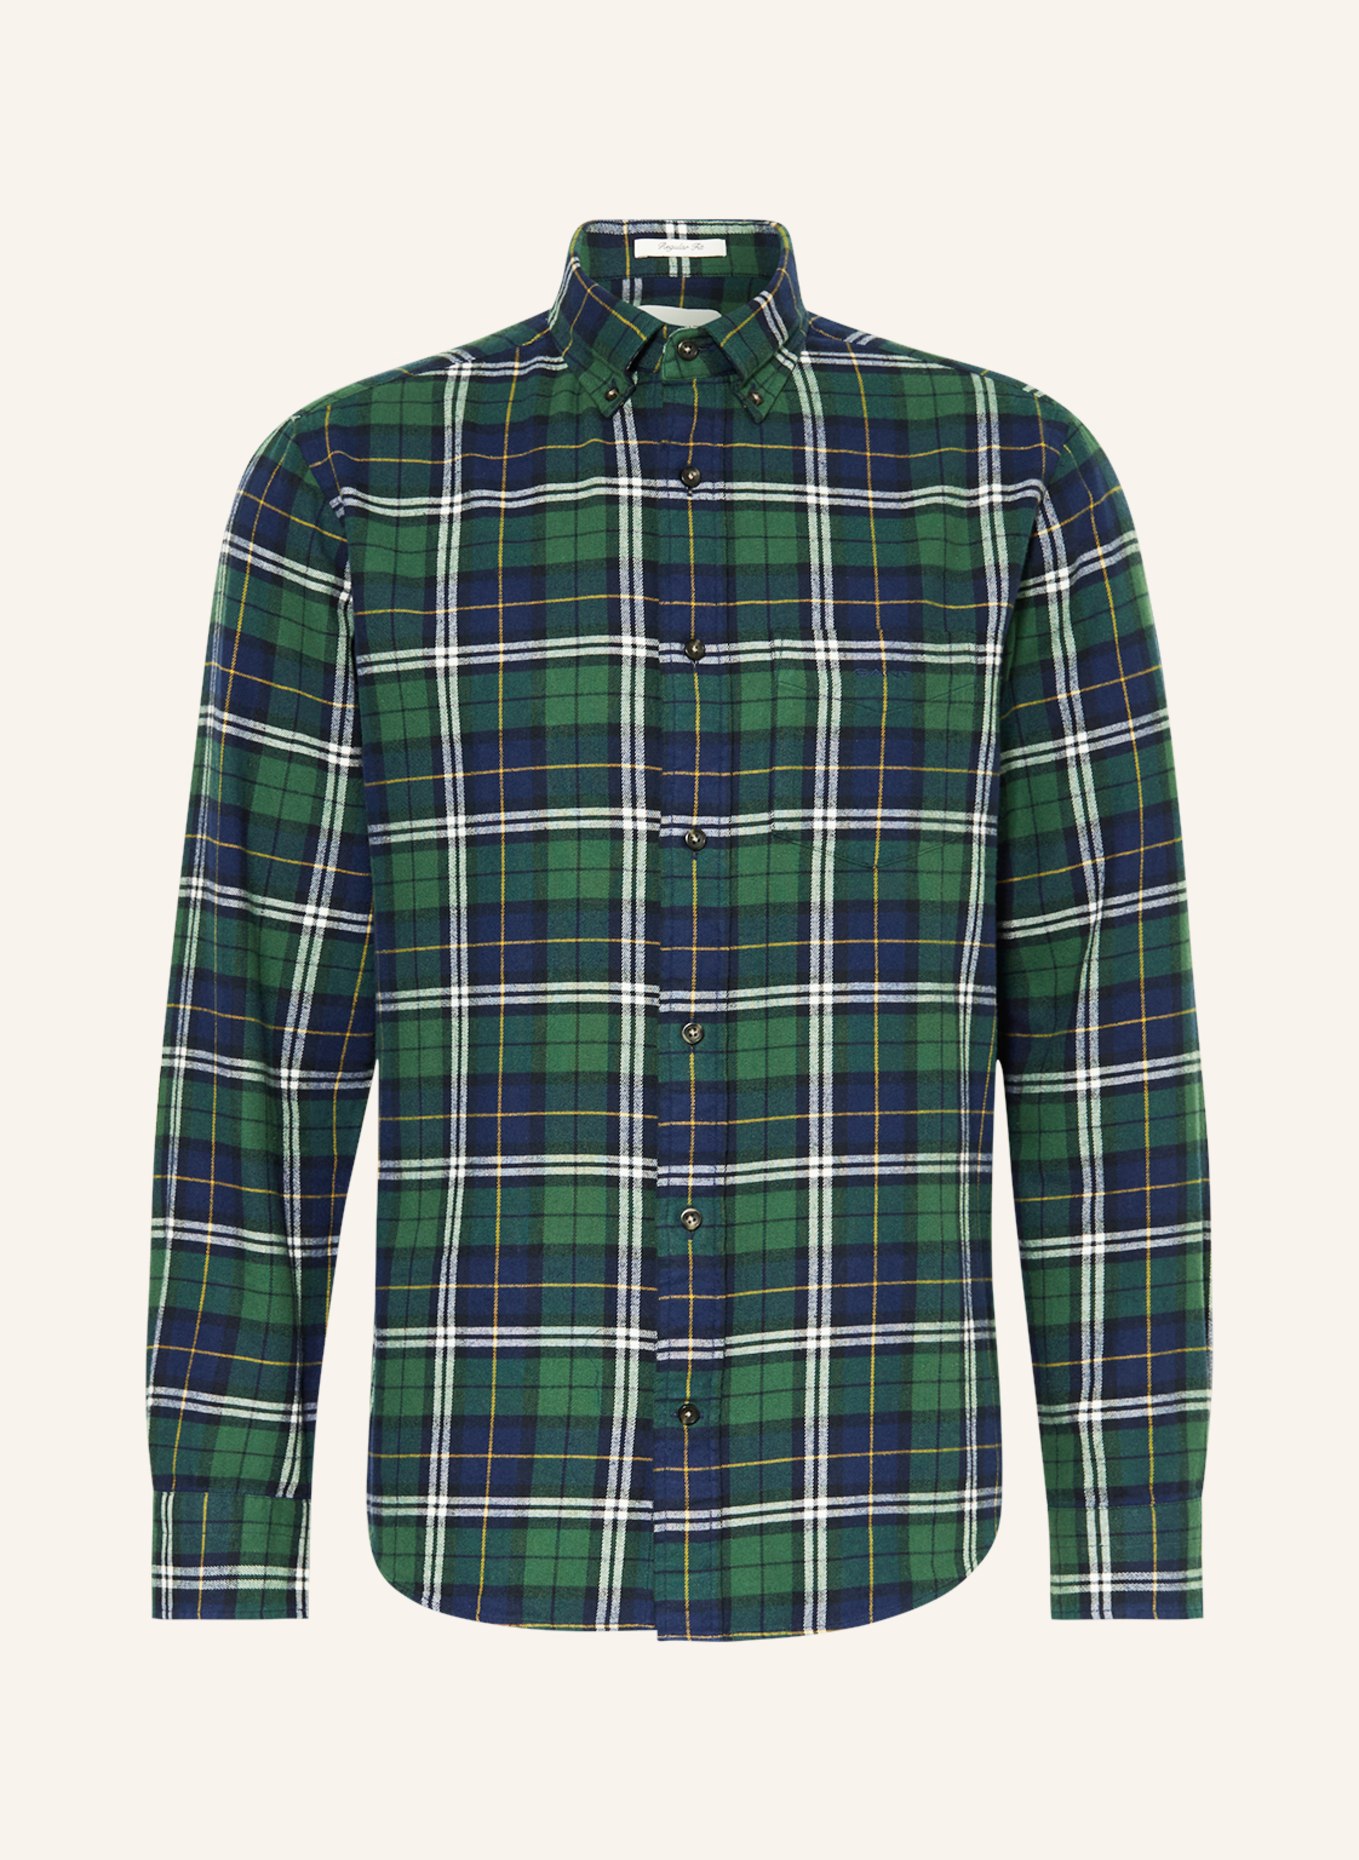 GANT Flannel shirt regular fit, Color: DARK BLUE/ GREEN/ WHITE (Image 1)